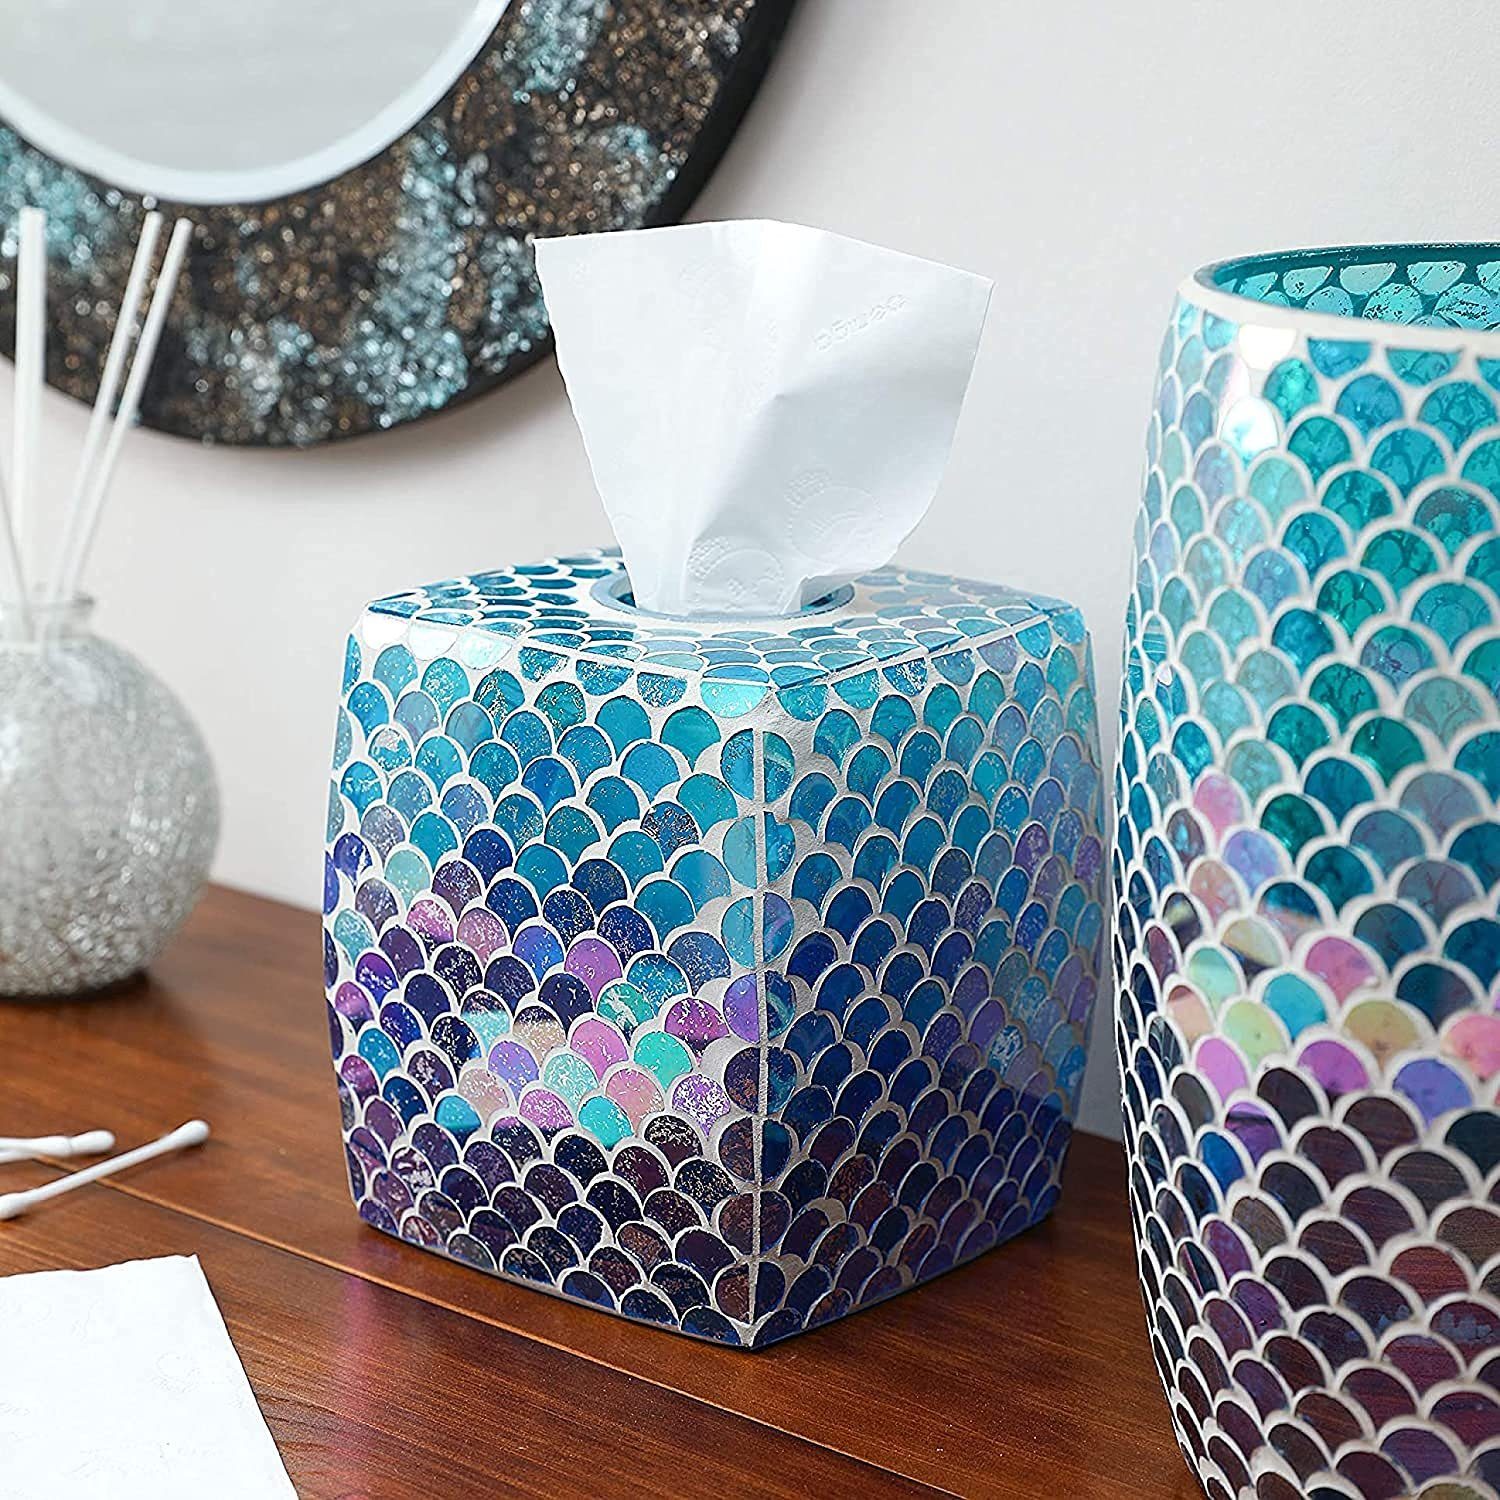 Taschentuch-Box, Bad-Accessoire, Glas Whole Housewares Papiertuchspender Fächerform Mosaik